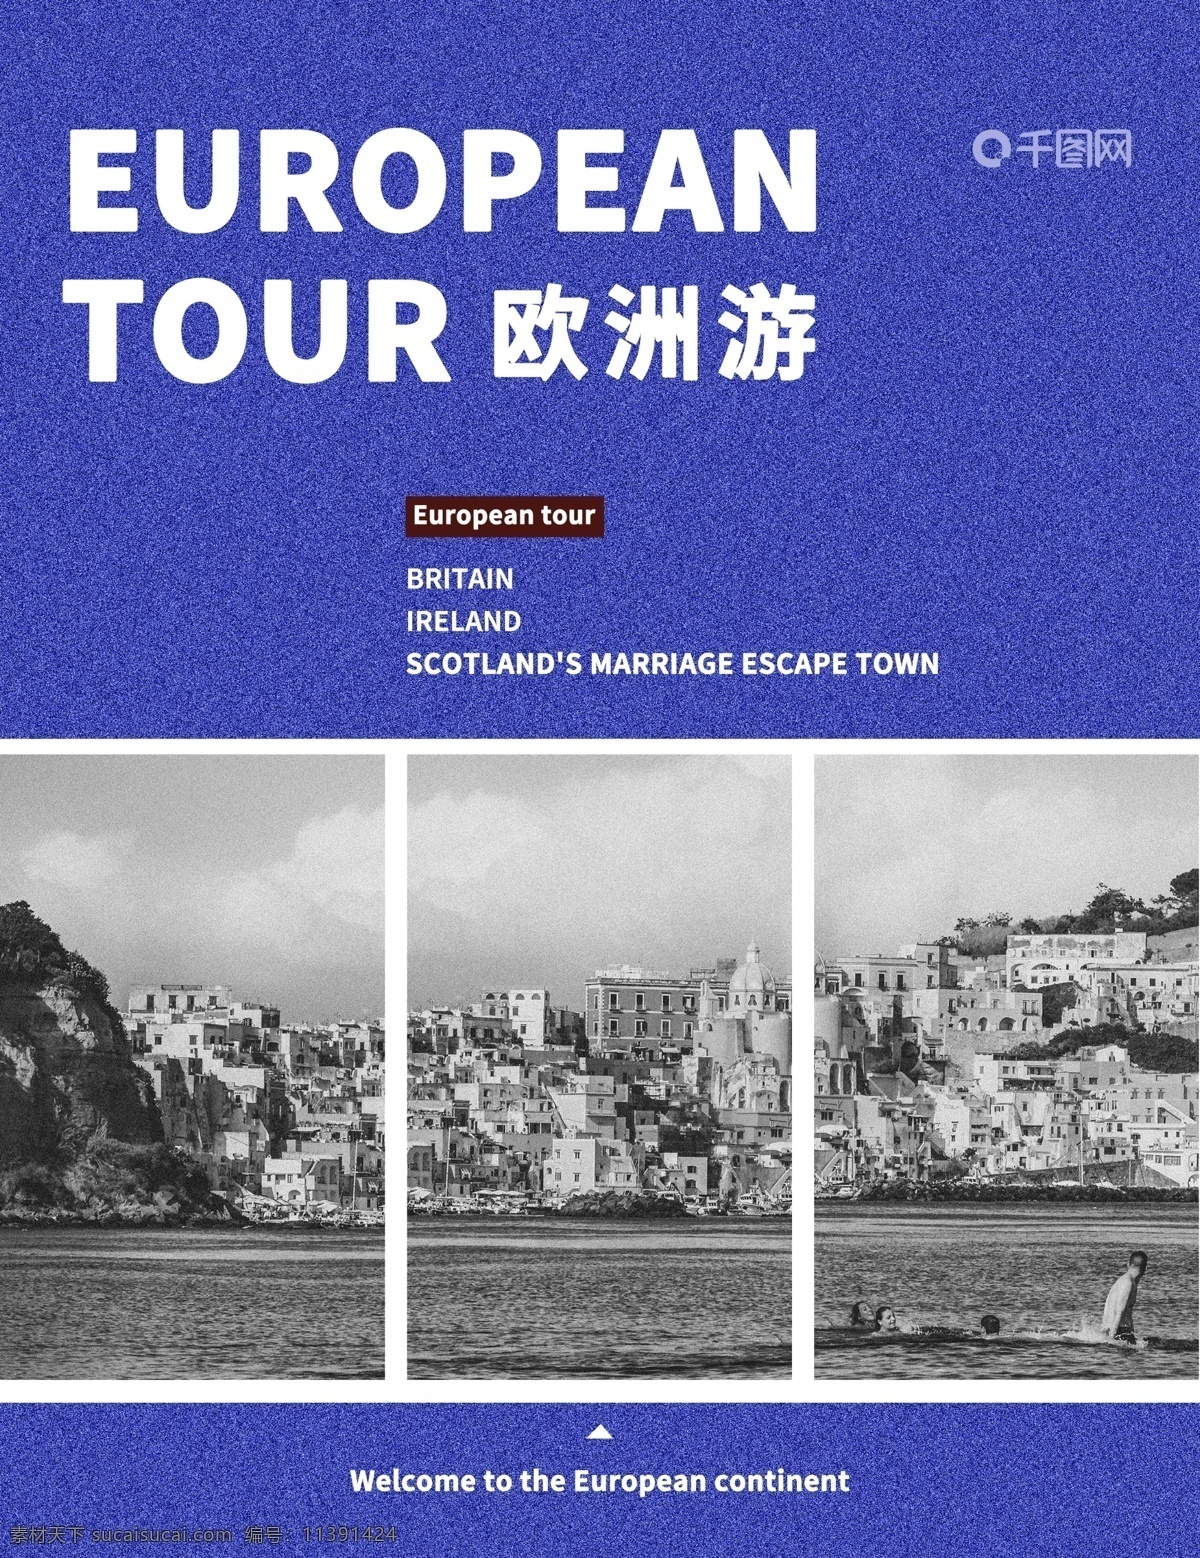 精美 欧洲旅游 画册 时尚 封面 欧洲游 旅游画册 简约 蓝色封面